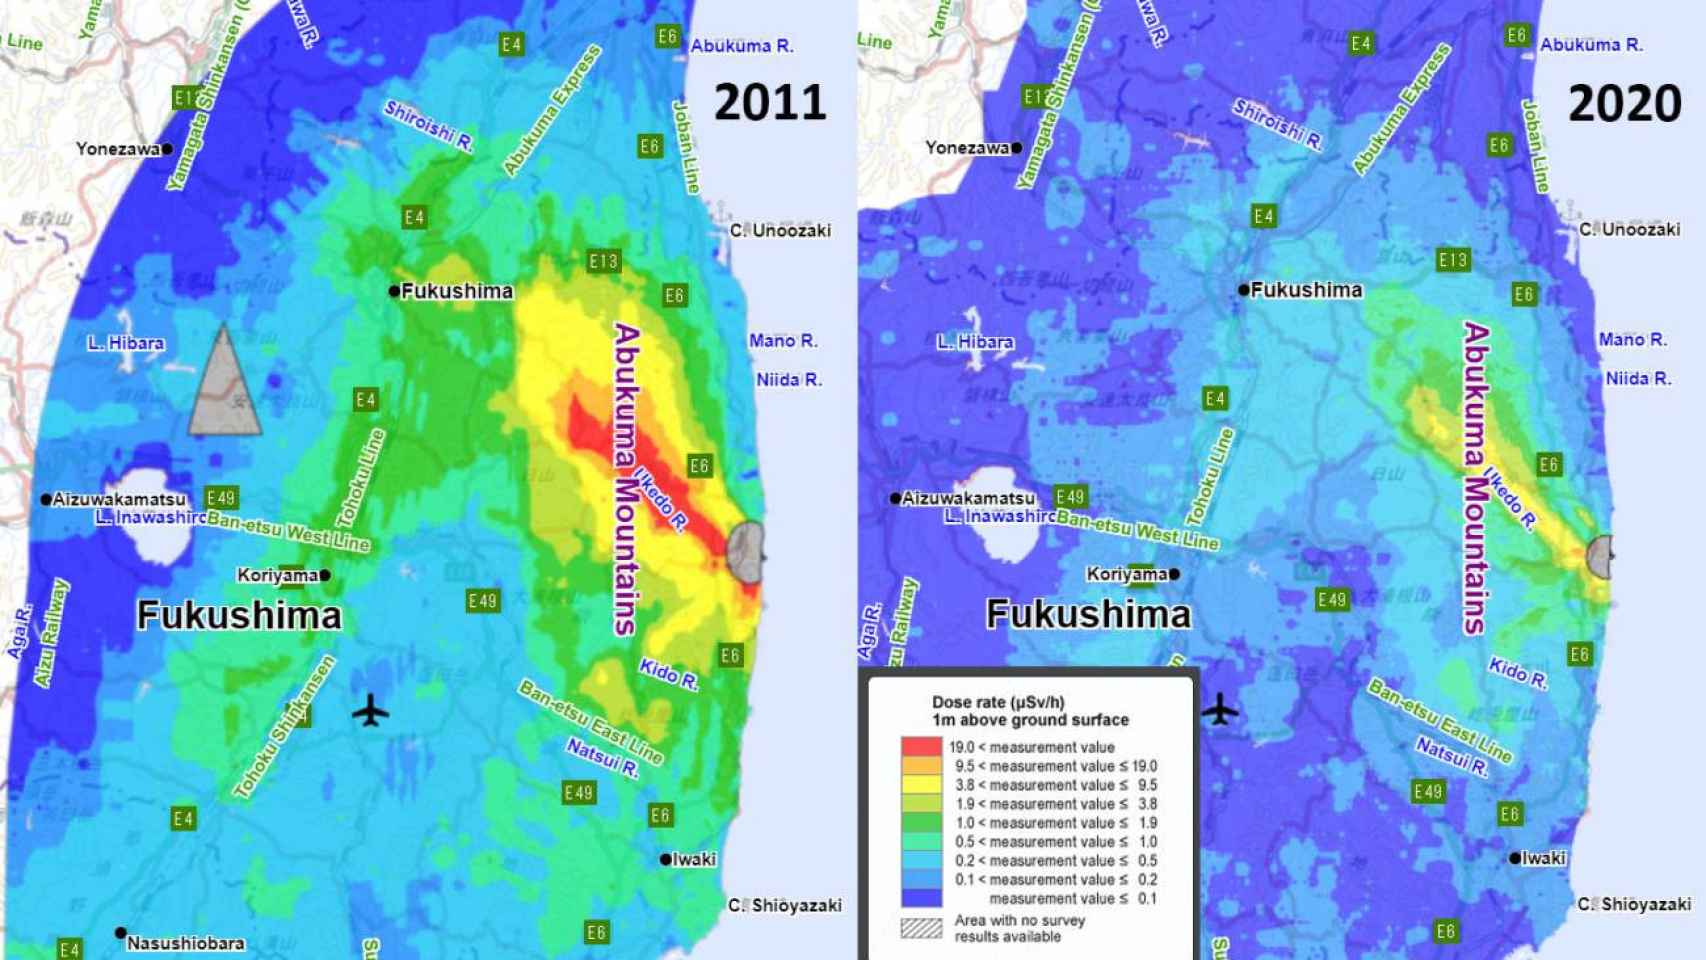 Evolución de la radiación en el aire en el entorno de Fukushima entre 2011 y 2020.